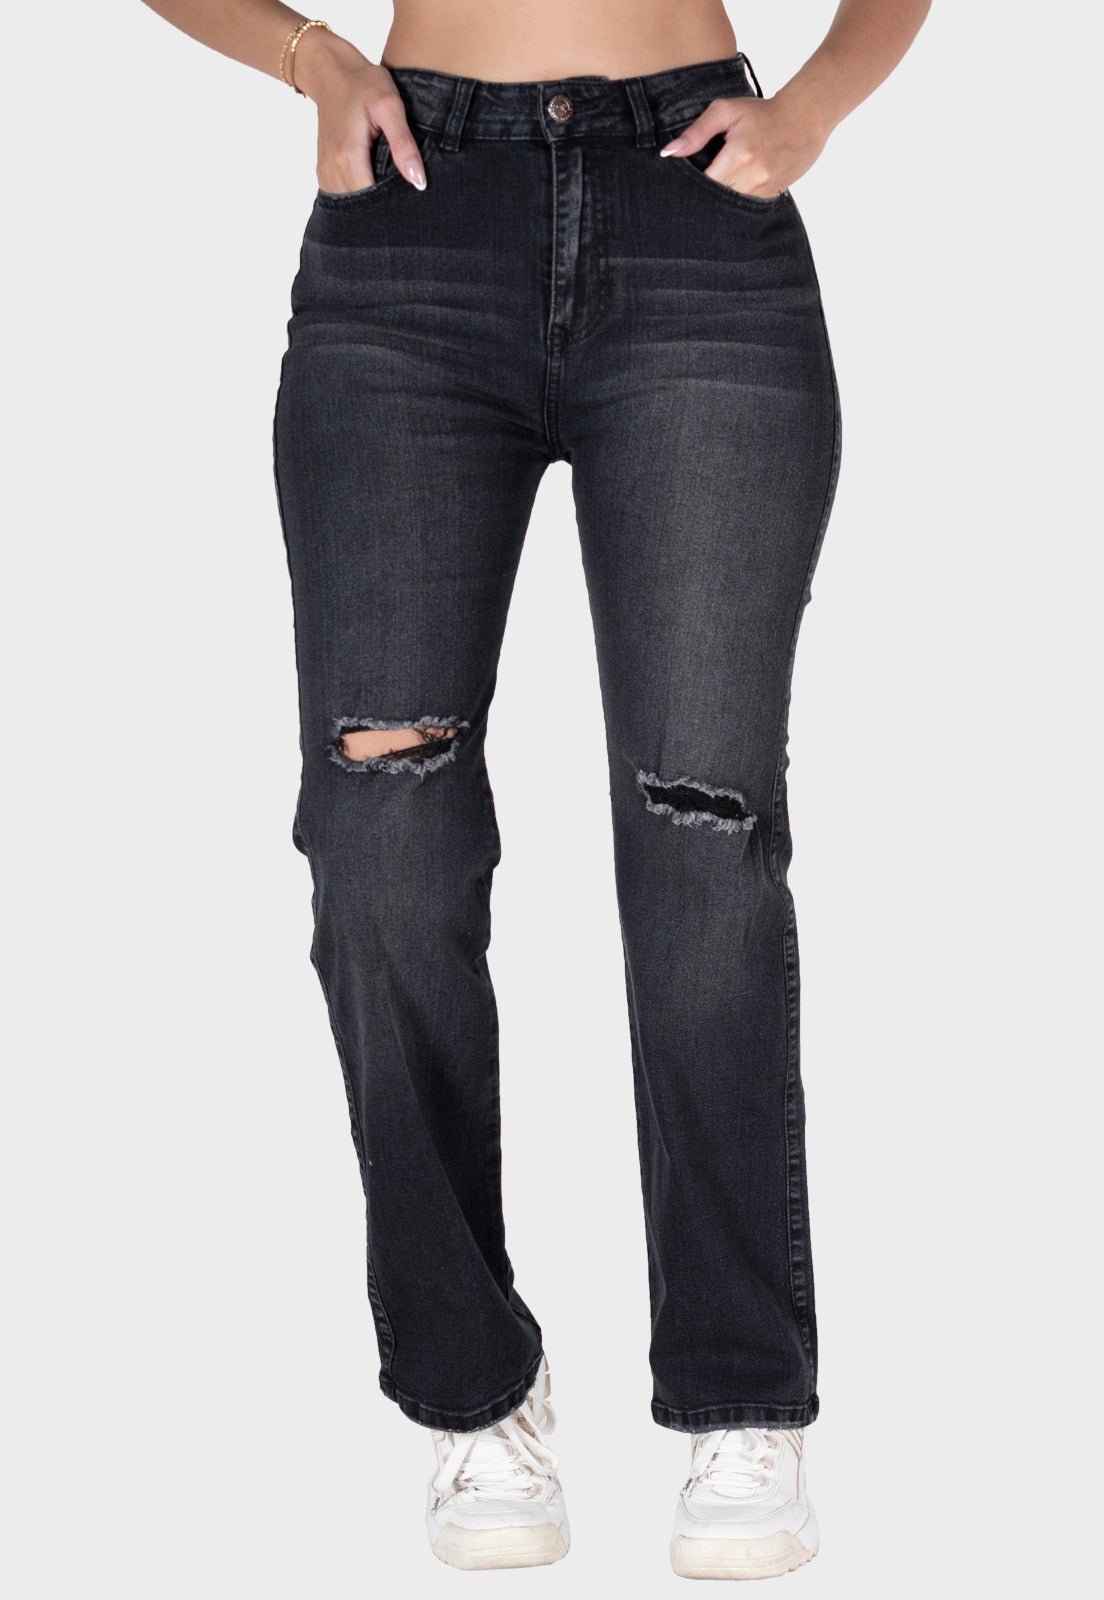 Pantalón jean straight negro para mujer